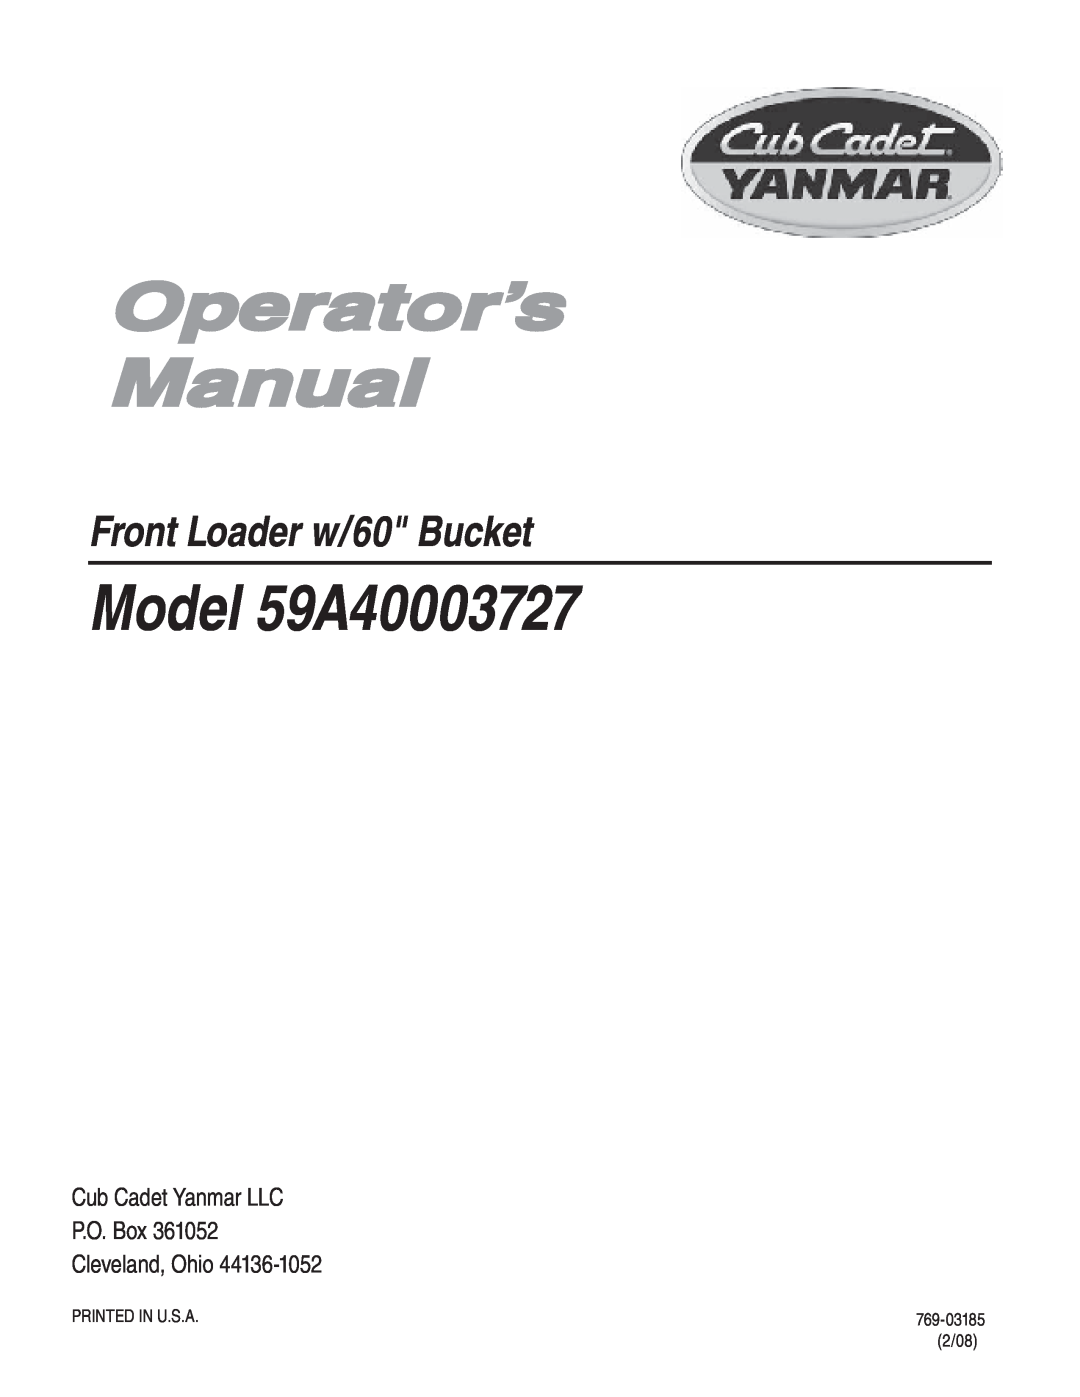 Cub Cadet manual Operator’s Manual, Model 59A40003727, Front Loader w/60 Bucket 